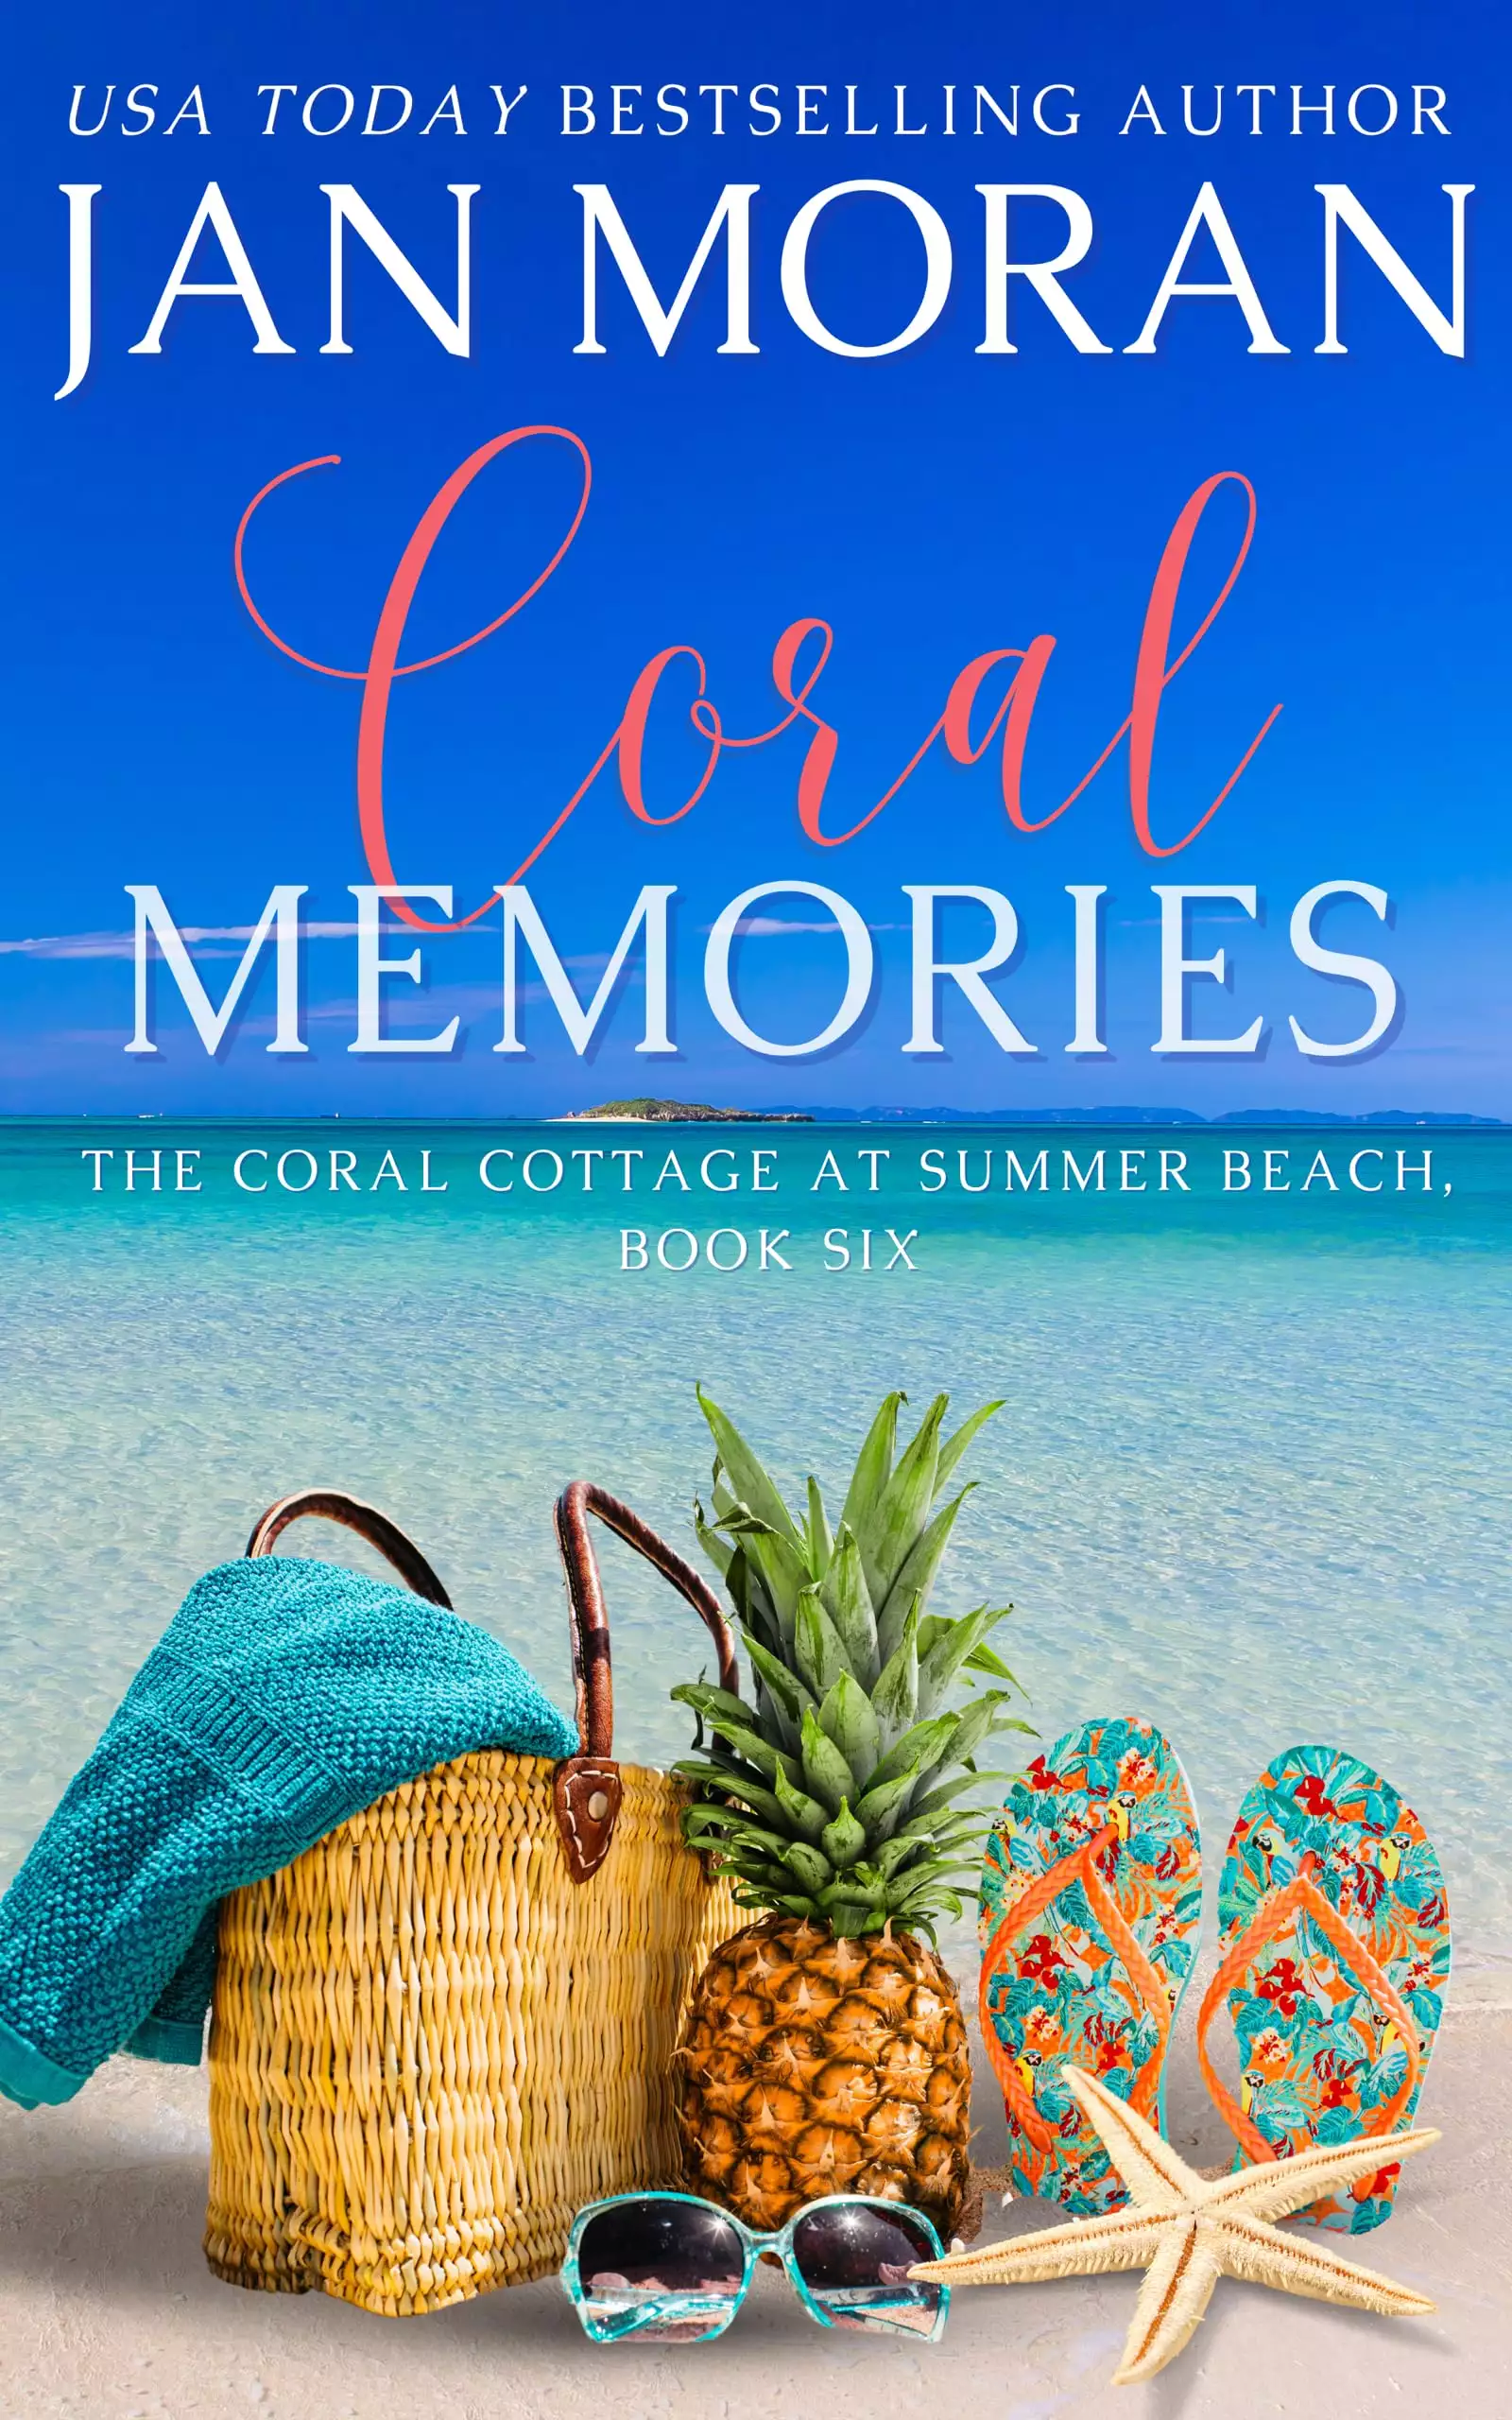 Coral Memories